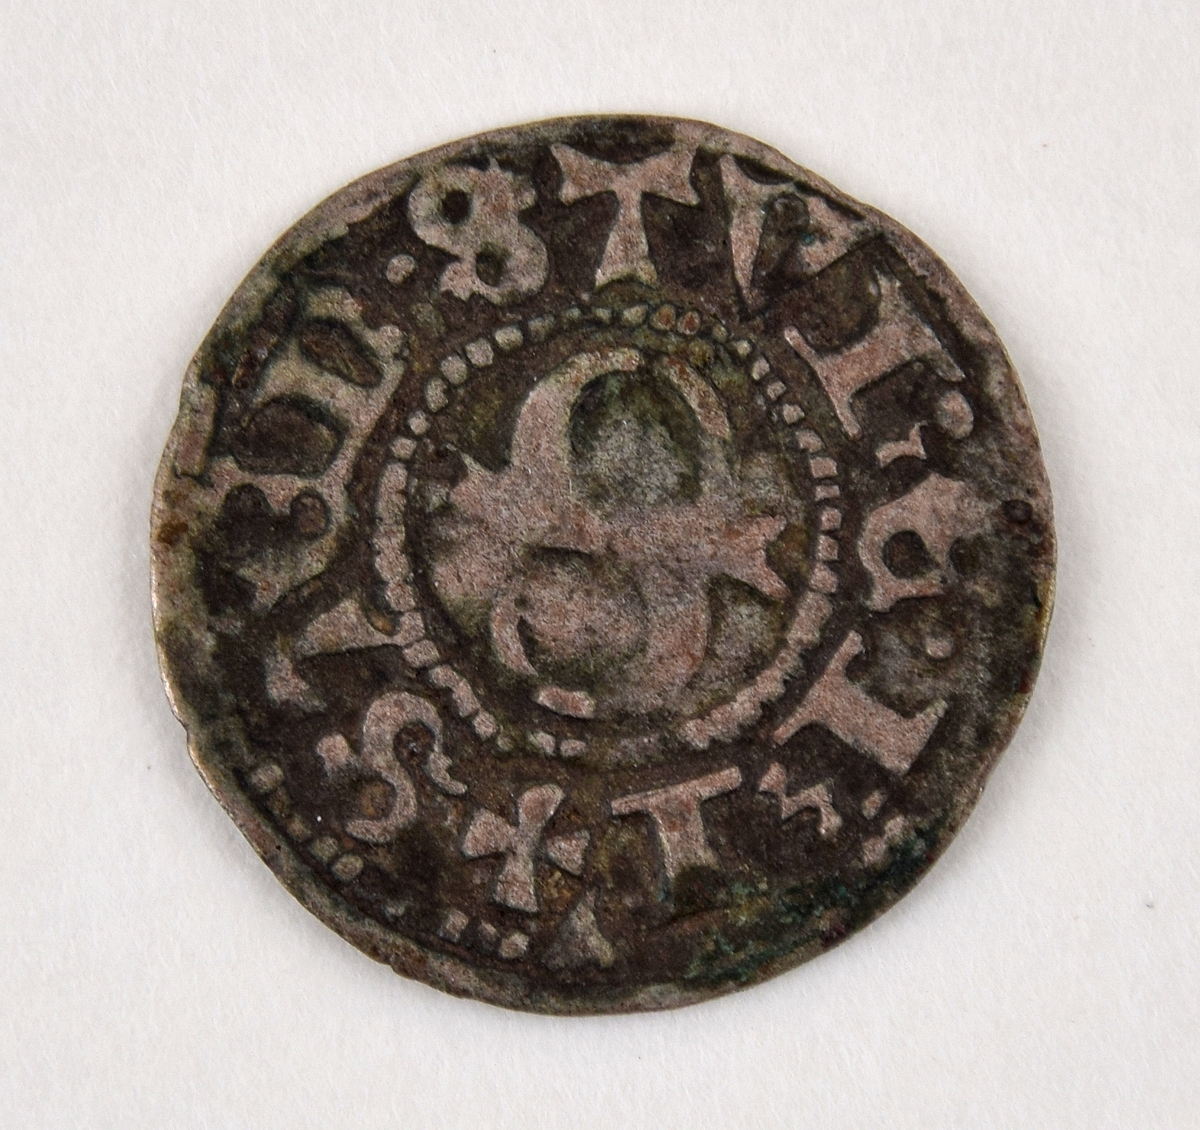 Två (a och b) likartade medeltida silvermynt.
halv örtug
Sten Sture d.y.
Stockholm